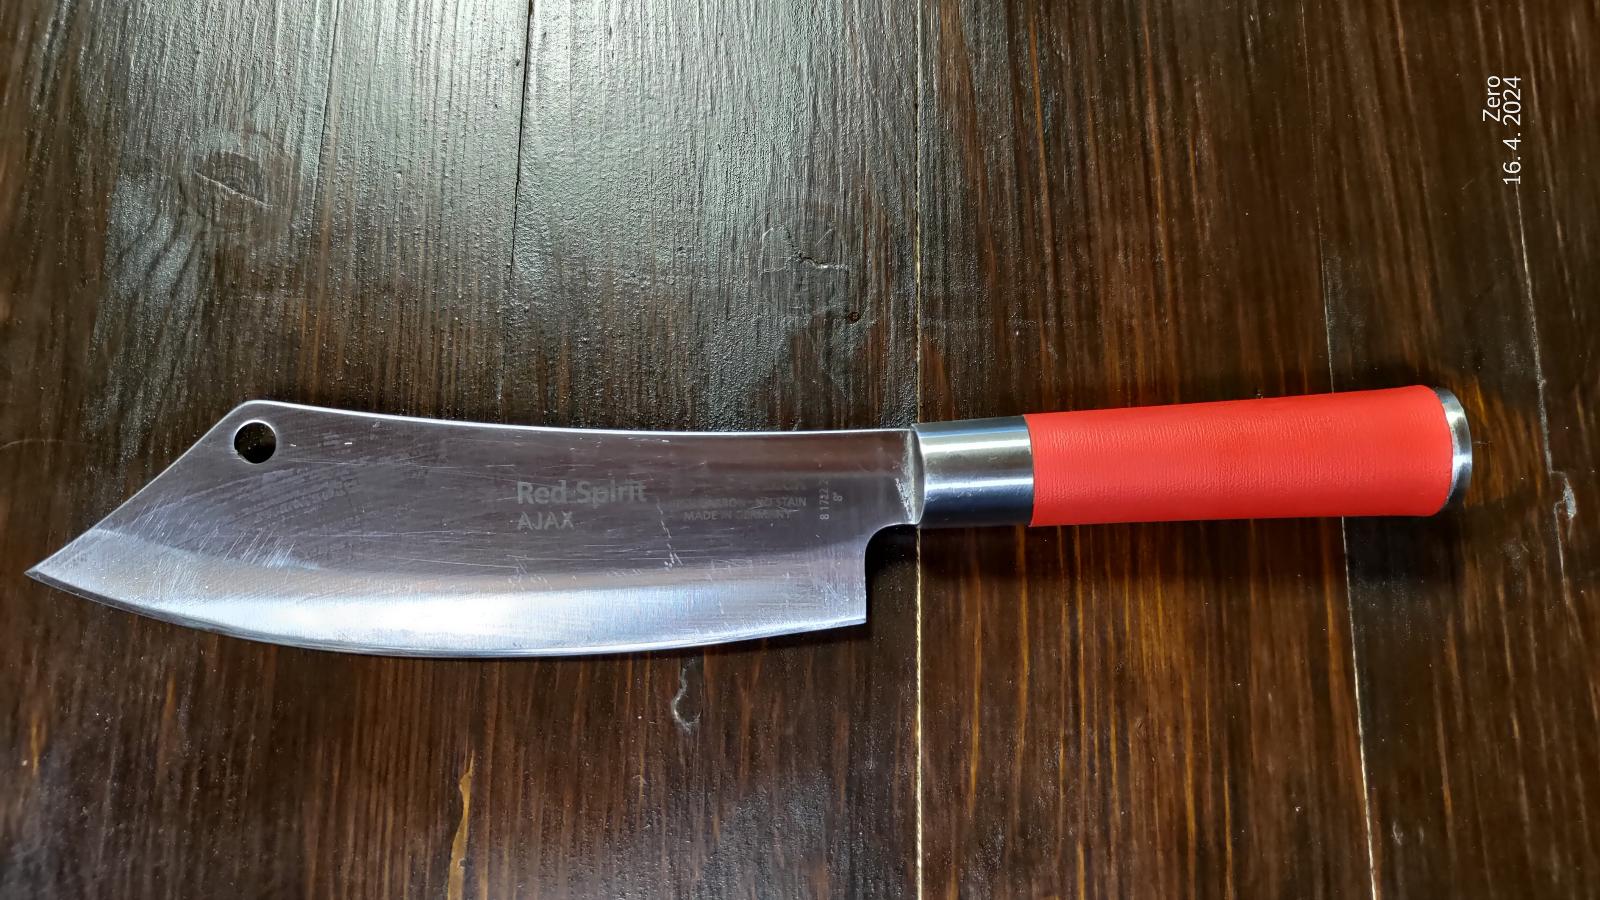 Kuchársky nôž Ajax Red Spirit F.Dick - Vybavenie do kuchyne